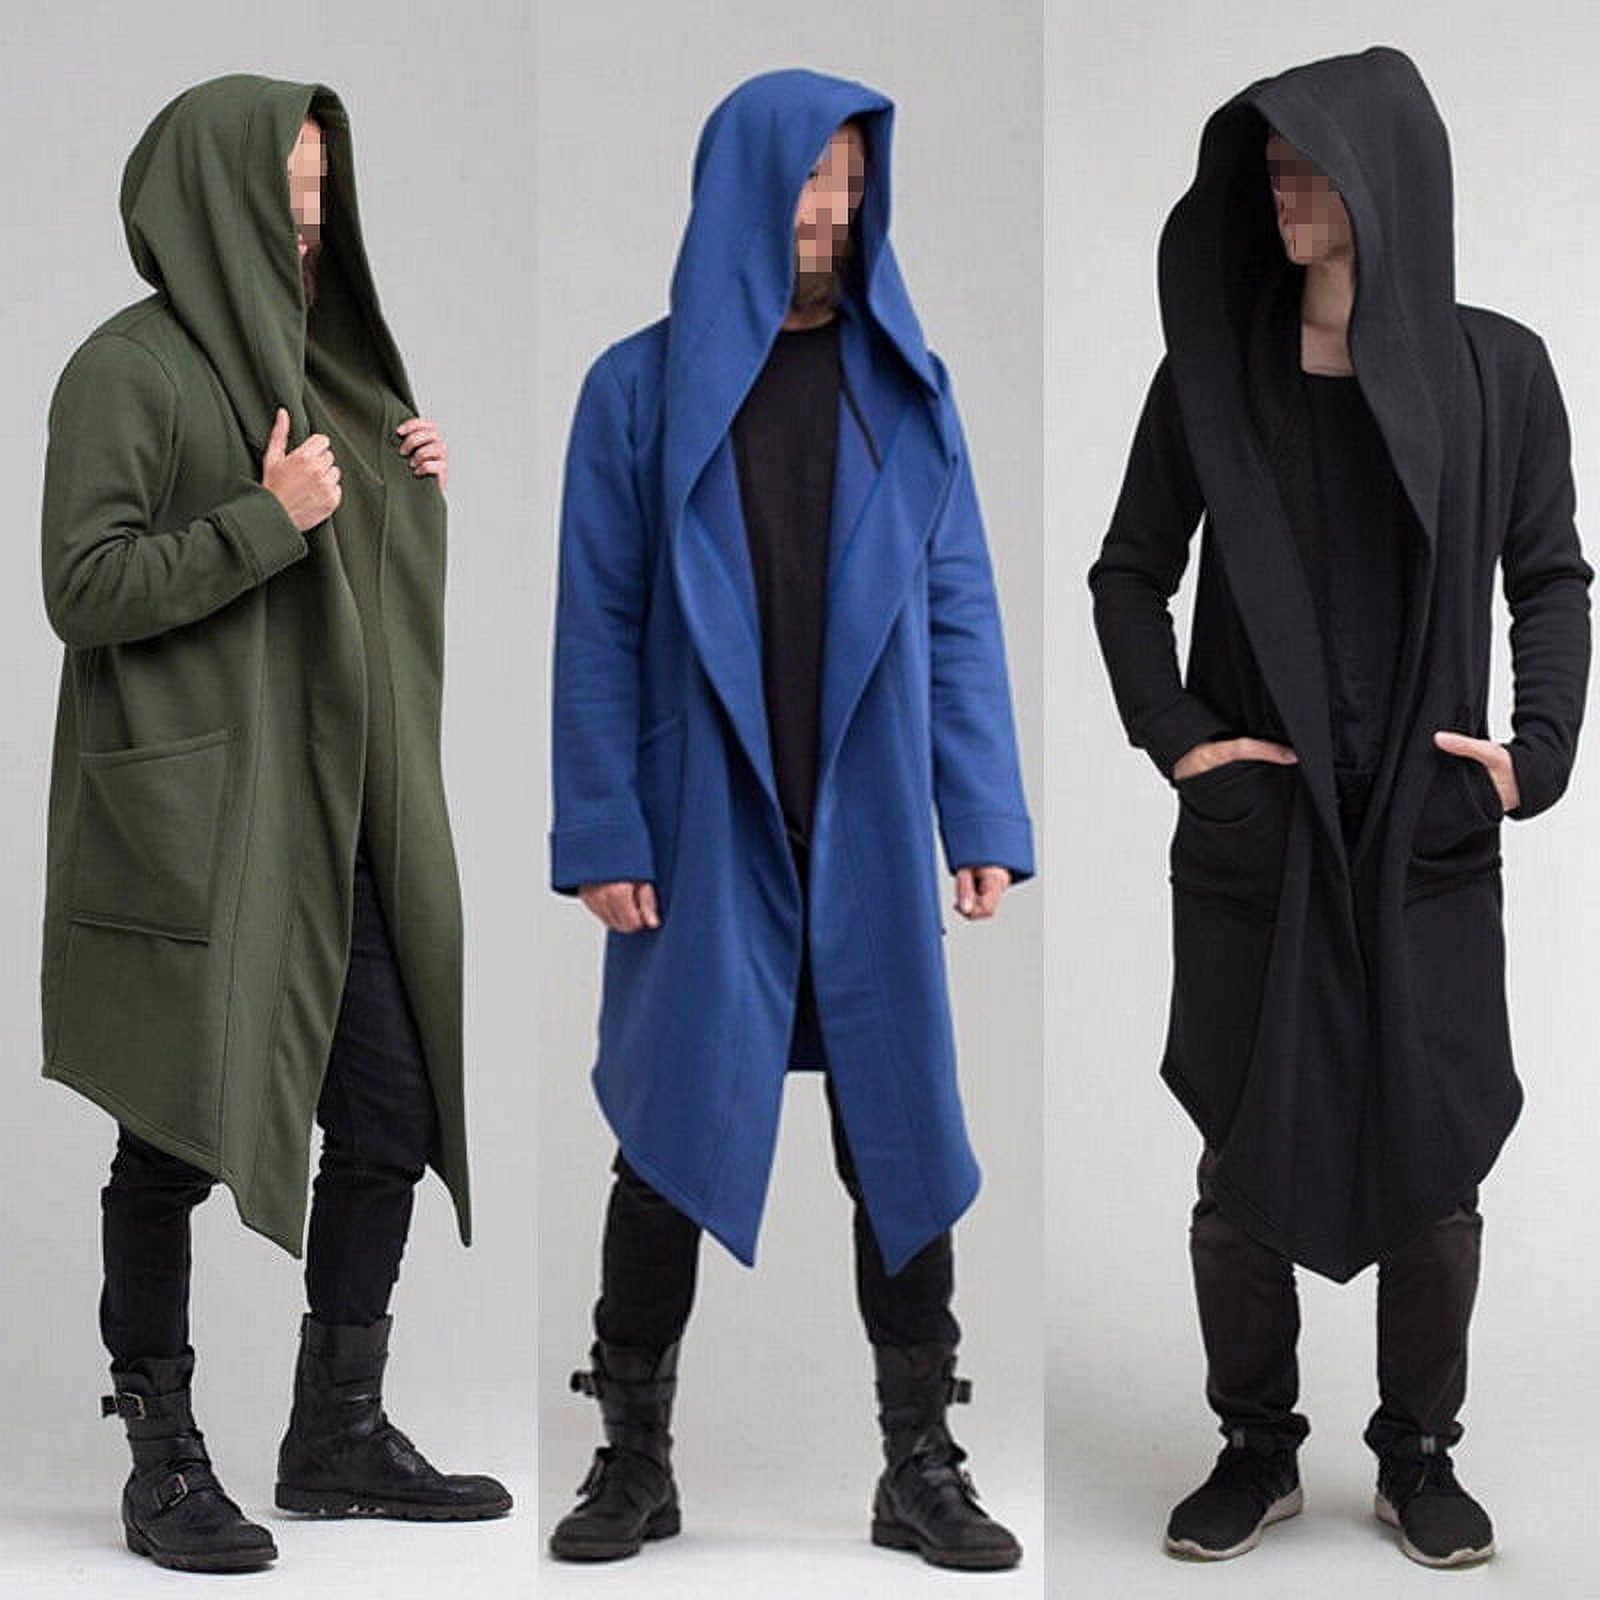 Men Women Outwear Hooded Coat Long Trench Jacket Warm Casual Cloak Cape ...